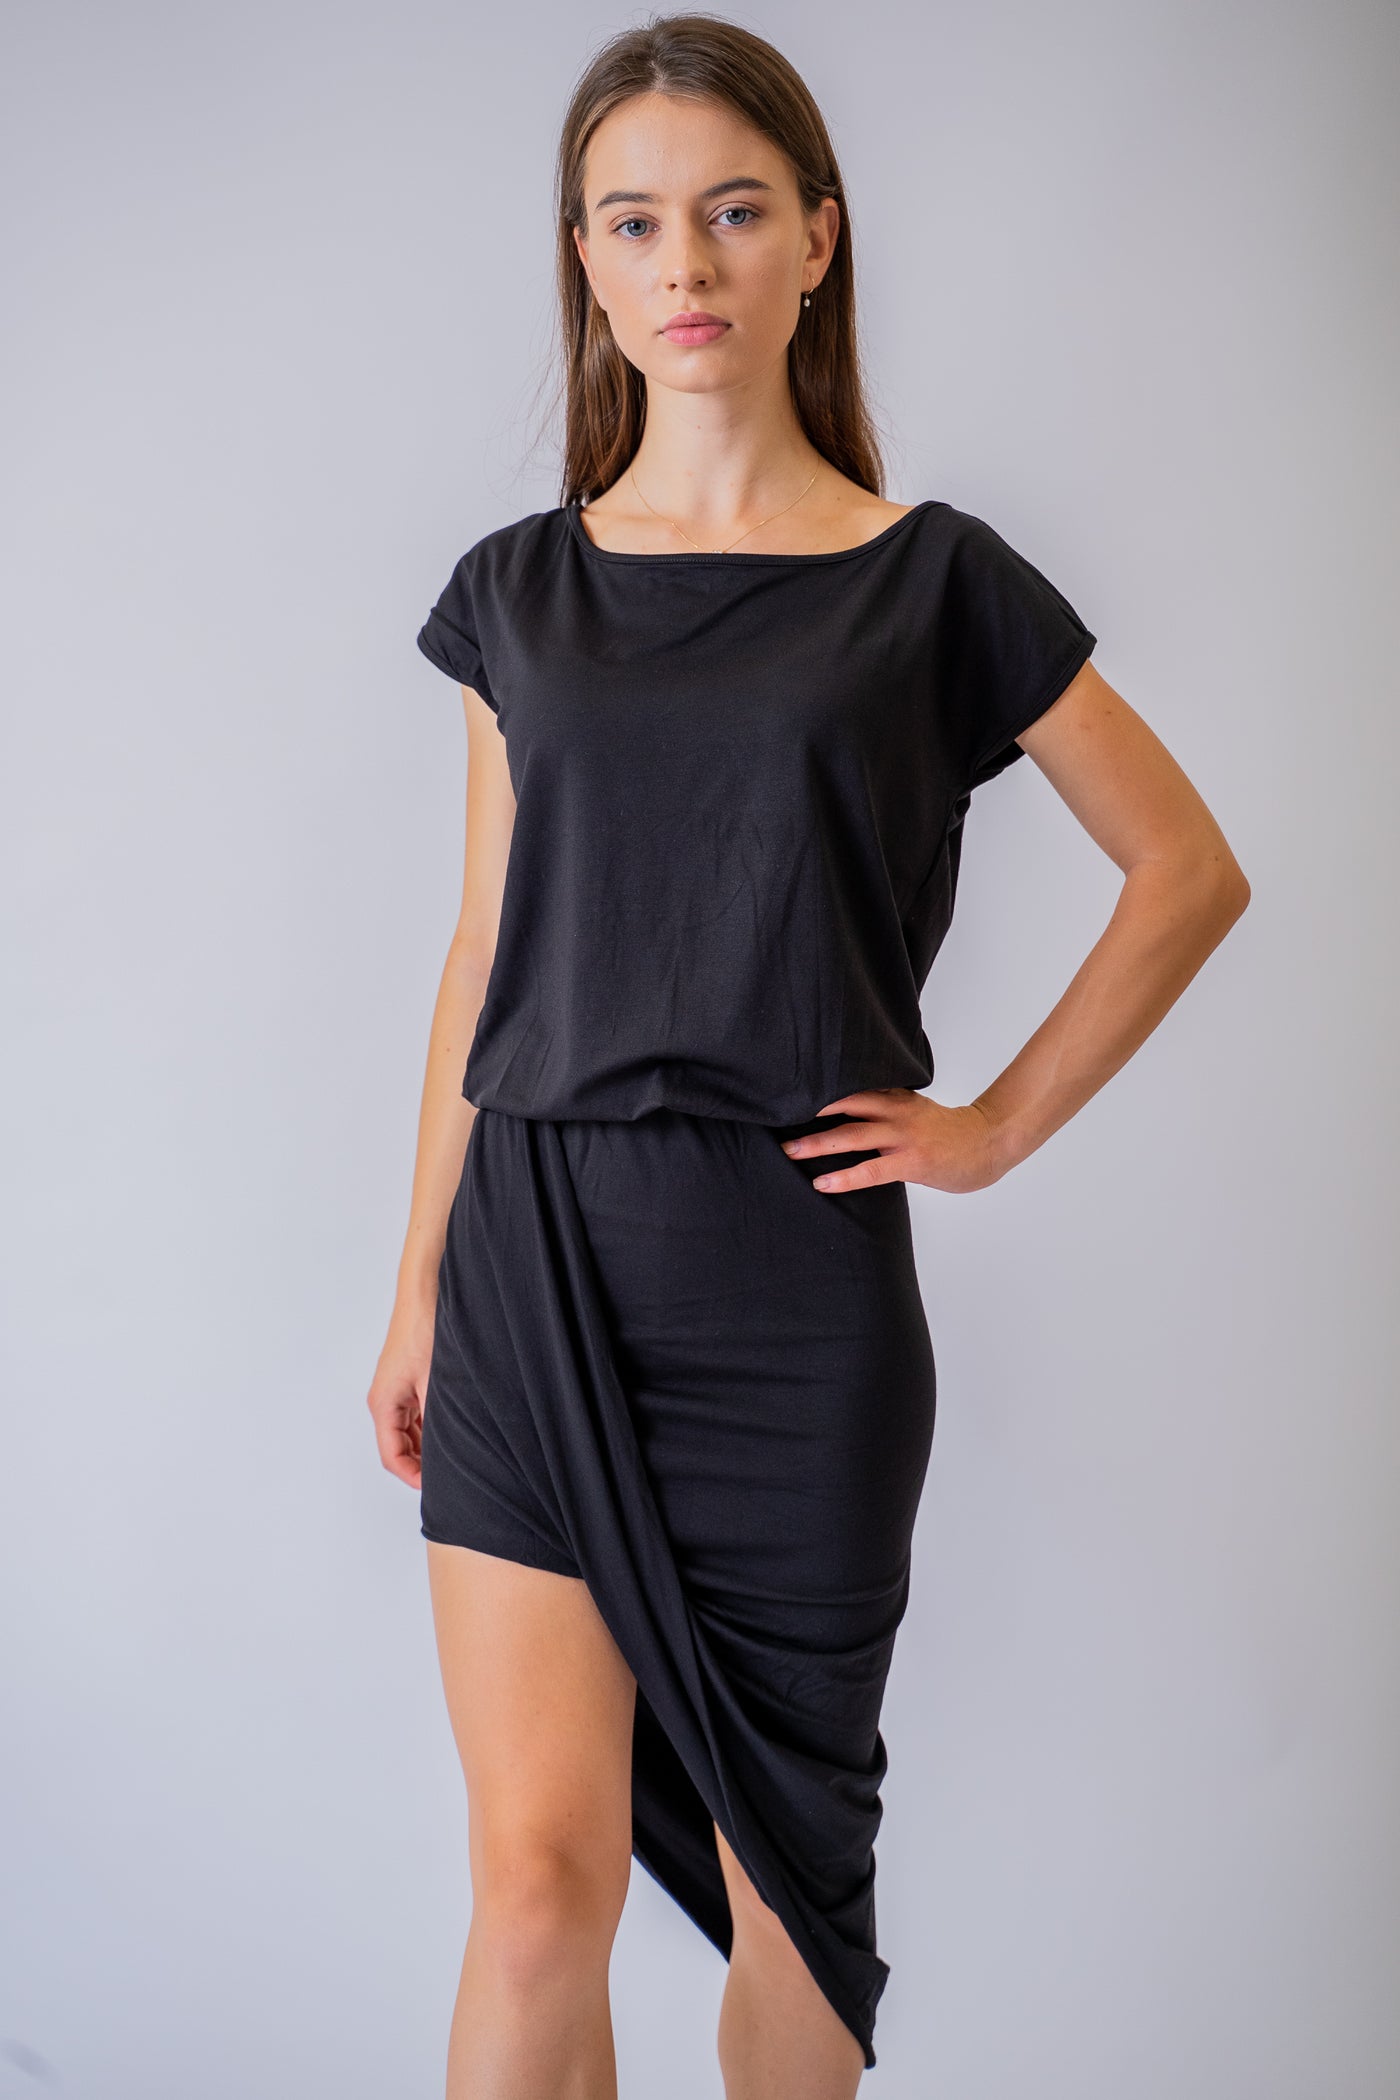 Čierne bavlnené šaty Sienna - UNI - Šaty